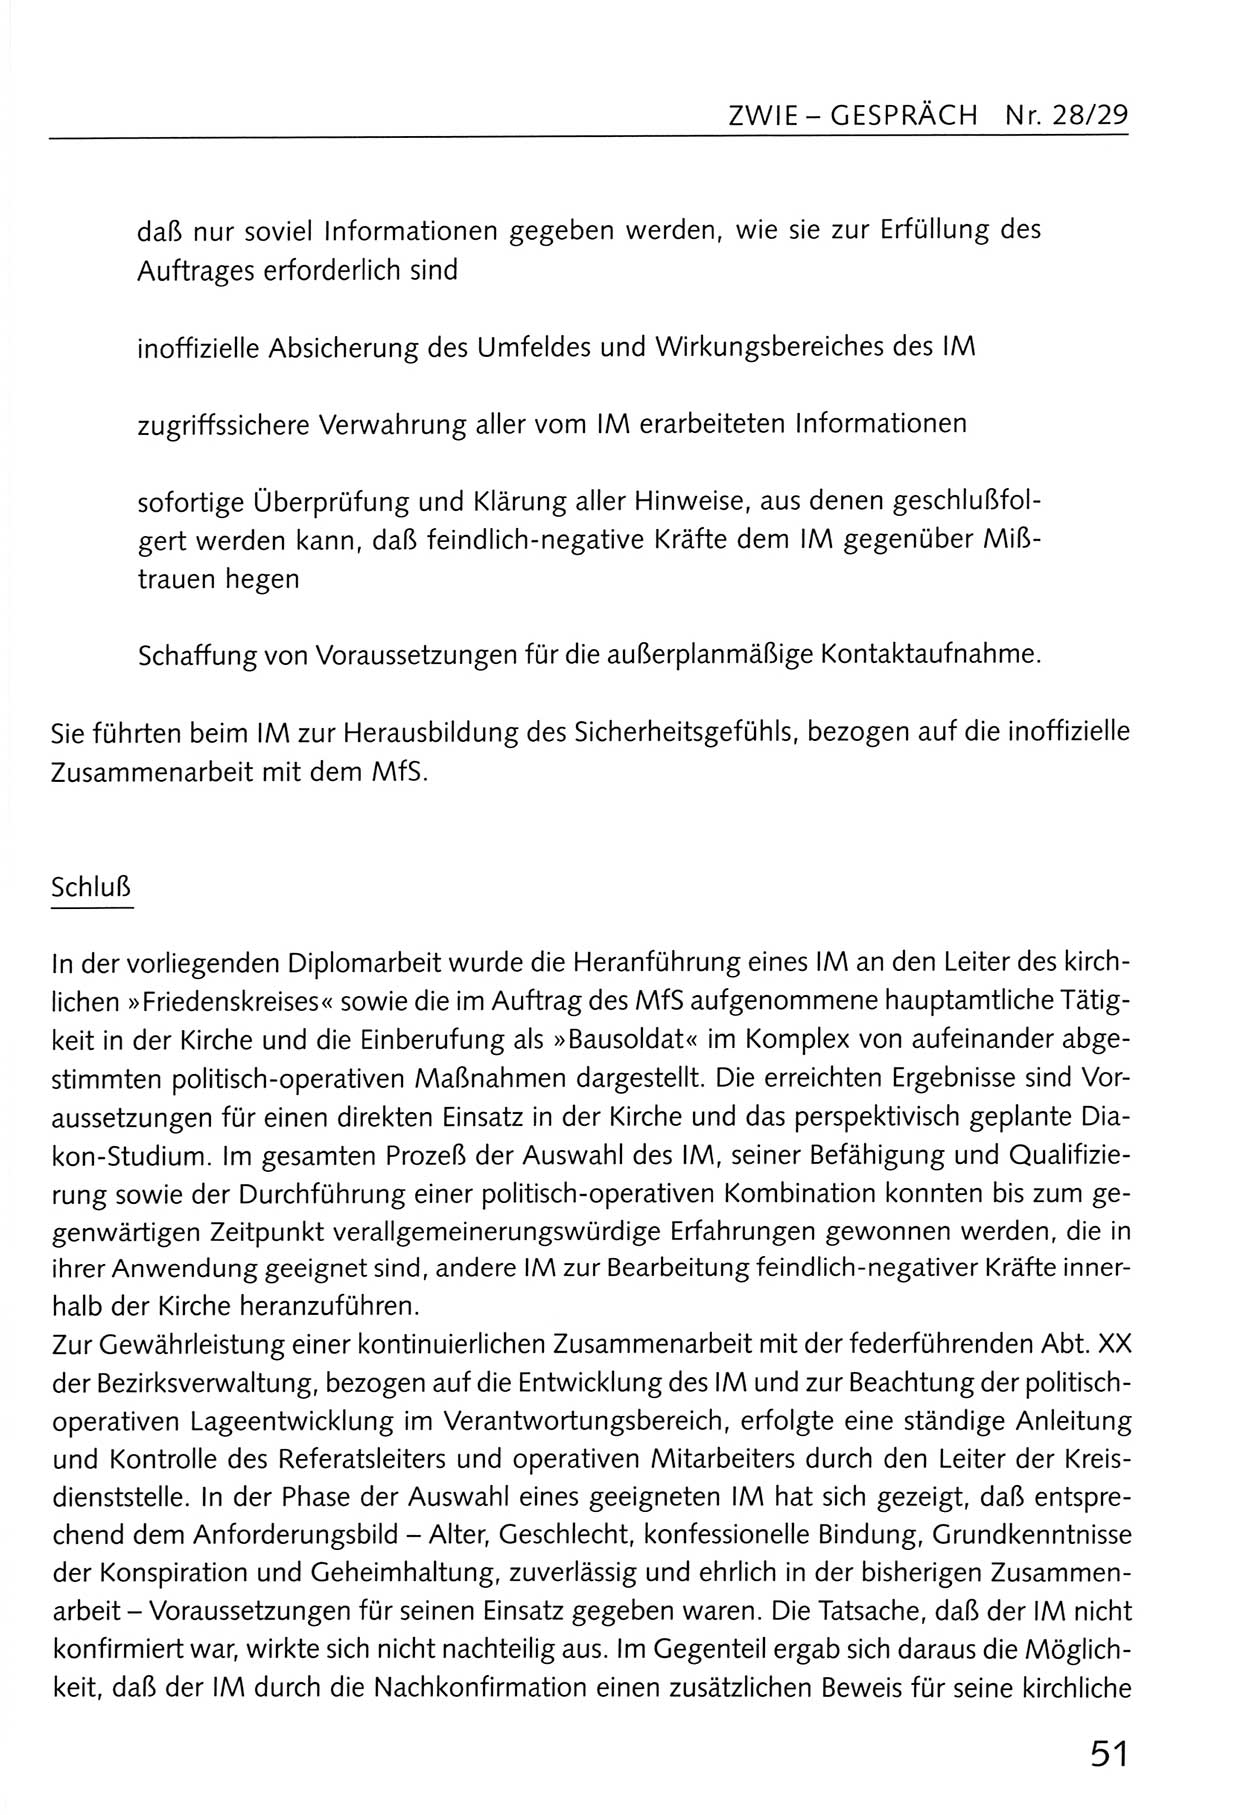 Zwie-Gespräch, Beiträge zum Umgang mit der Staatssicherheits-Vergangenheit [Deutsche Demokratische Republik (DDR)], Ausgabe Nr. 28/29, Berlin 1995, Seite 51 (Zwie-Gespr. Ausg. 28/29 1995, S. 51)